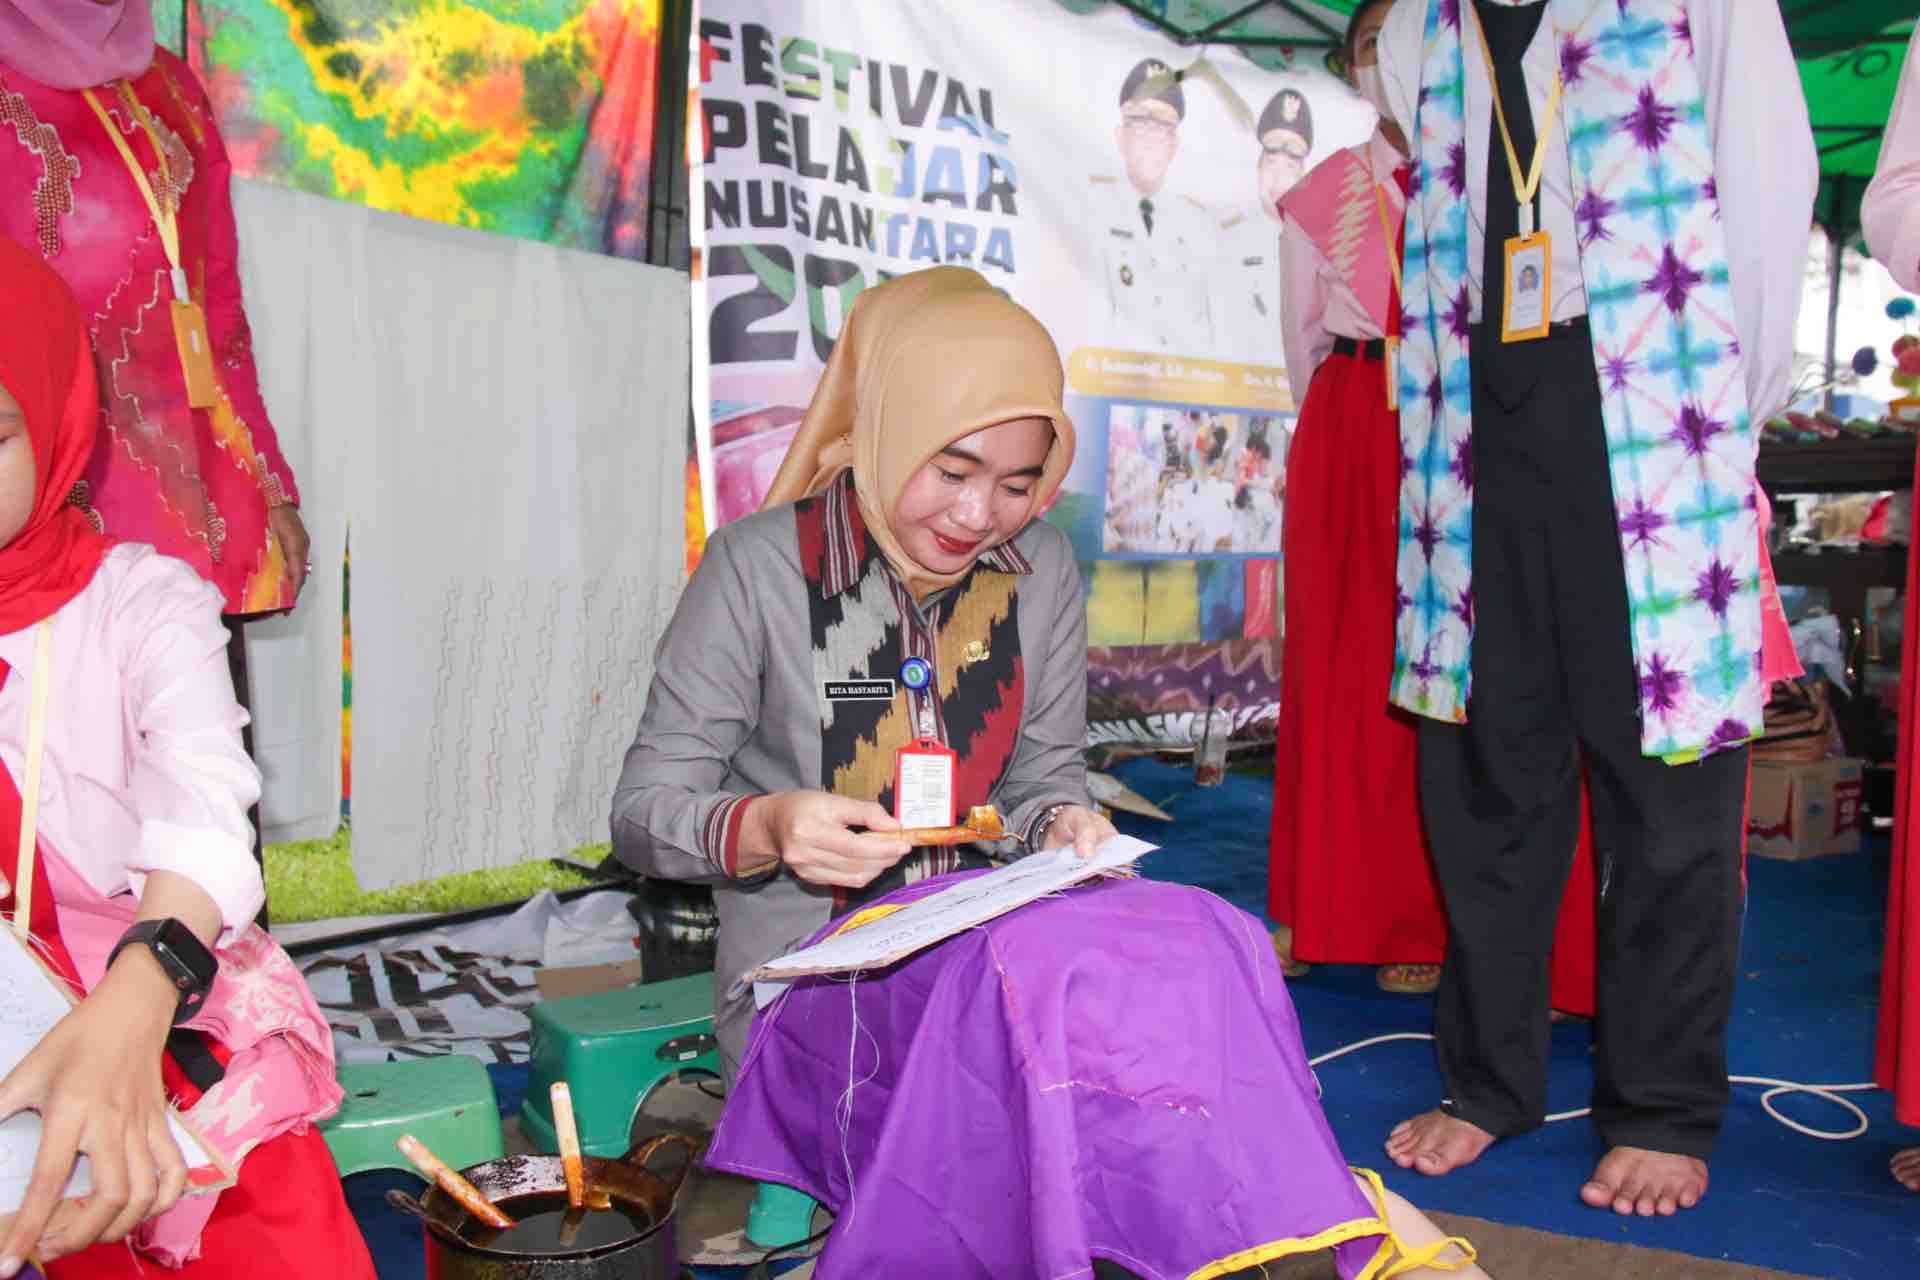 RRI Gelar Festival Pelajar Nusantara, Kadis Dikbud: Gelaran Implementasi dari Kurikulum Merdeka